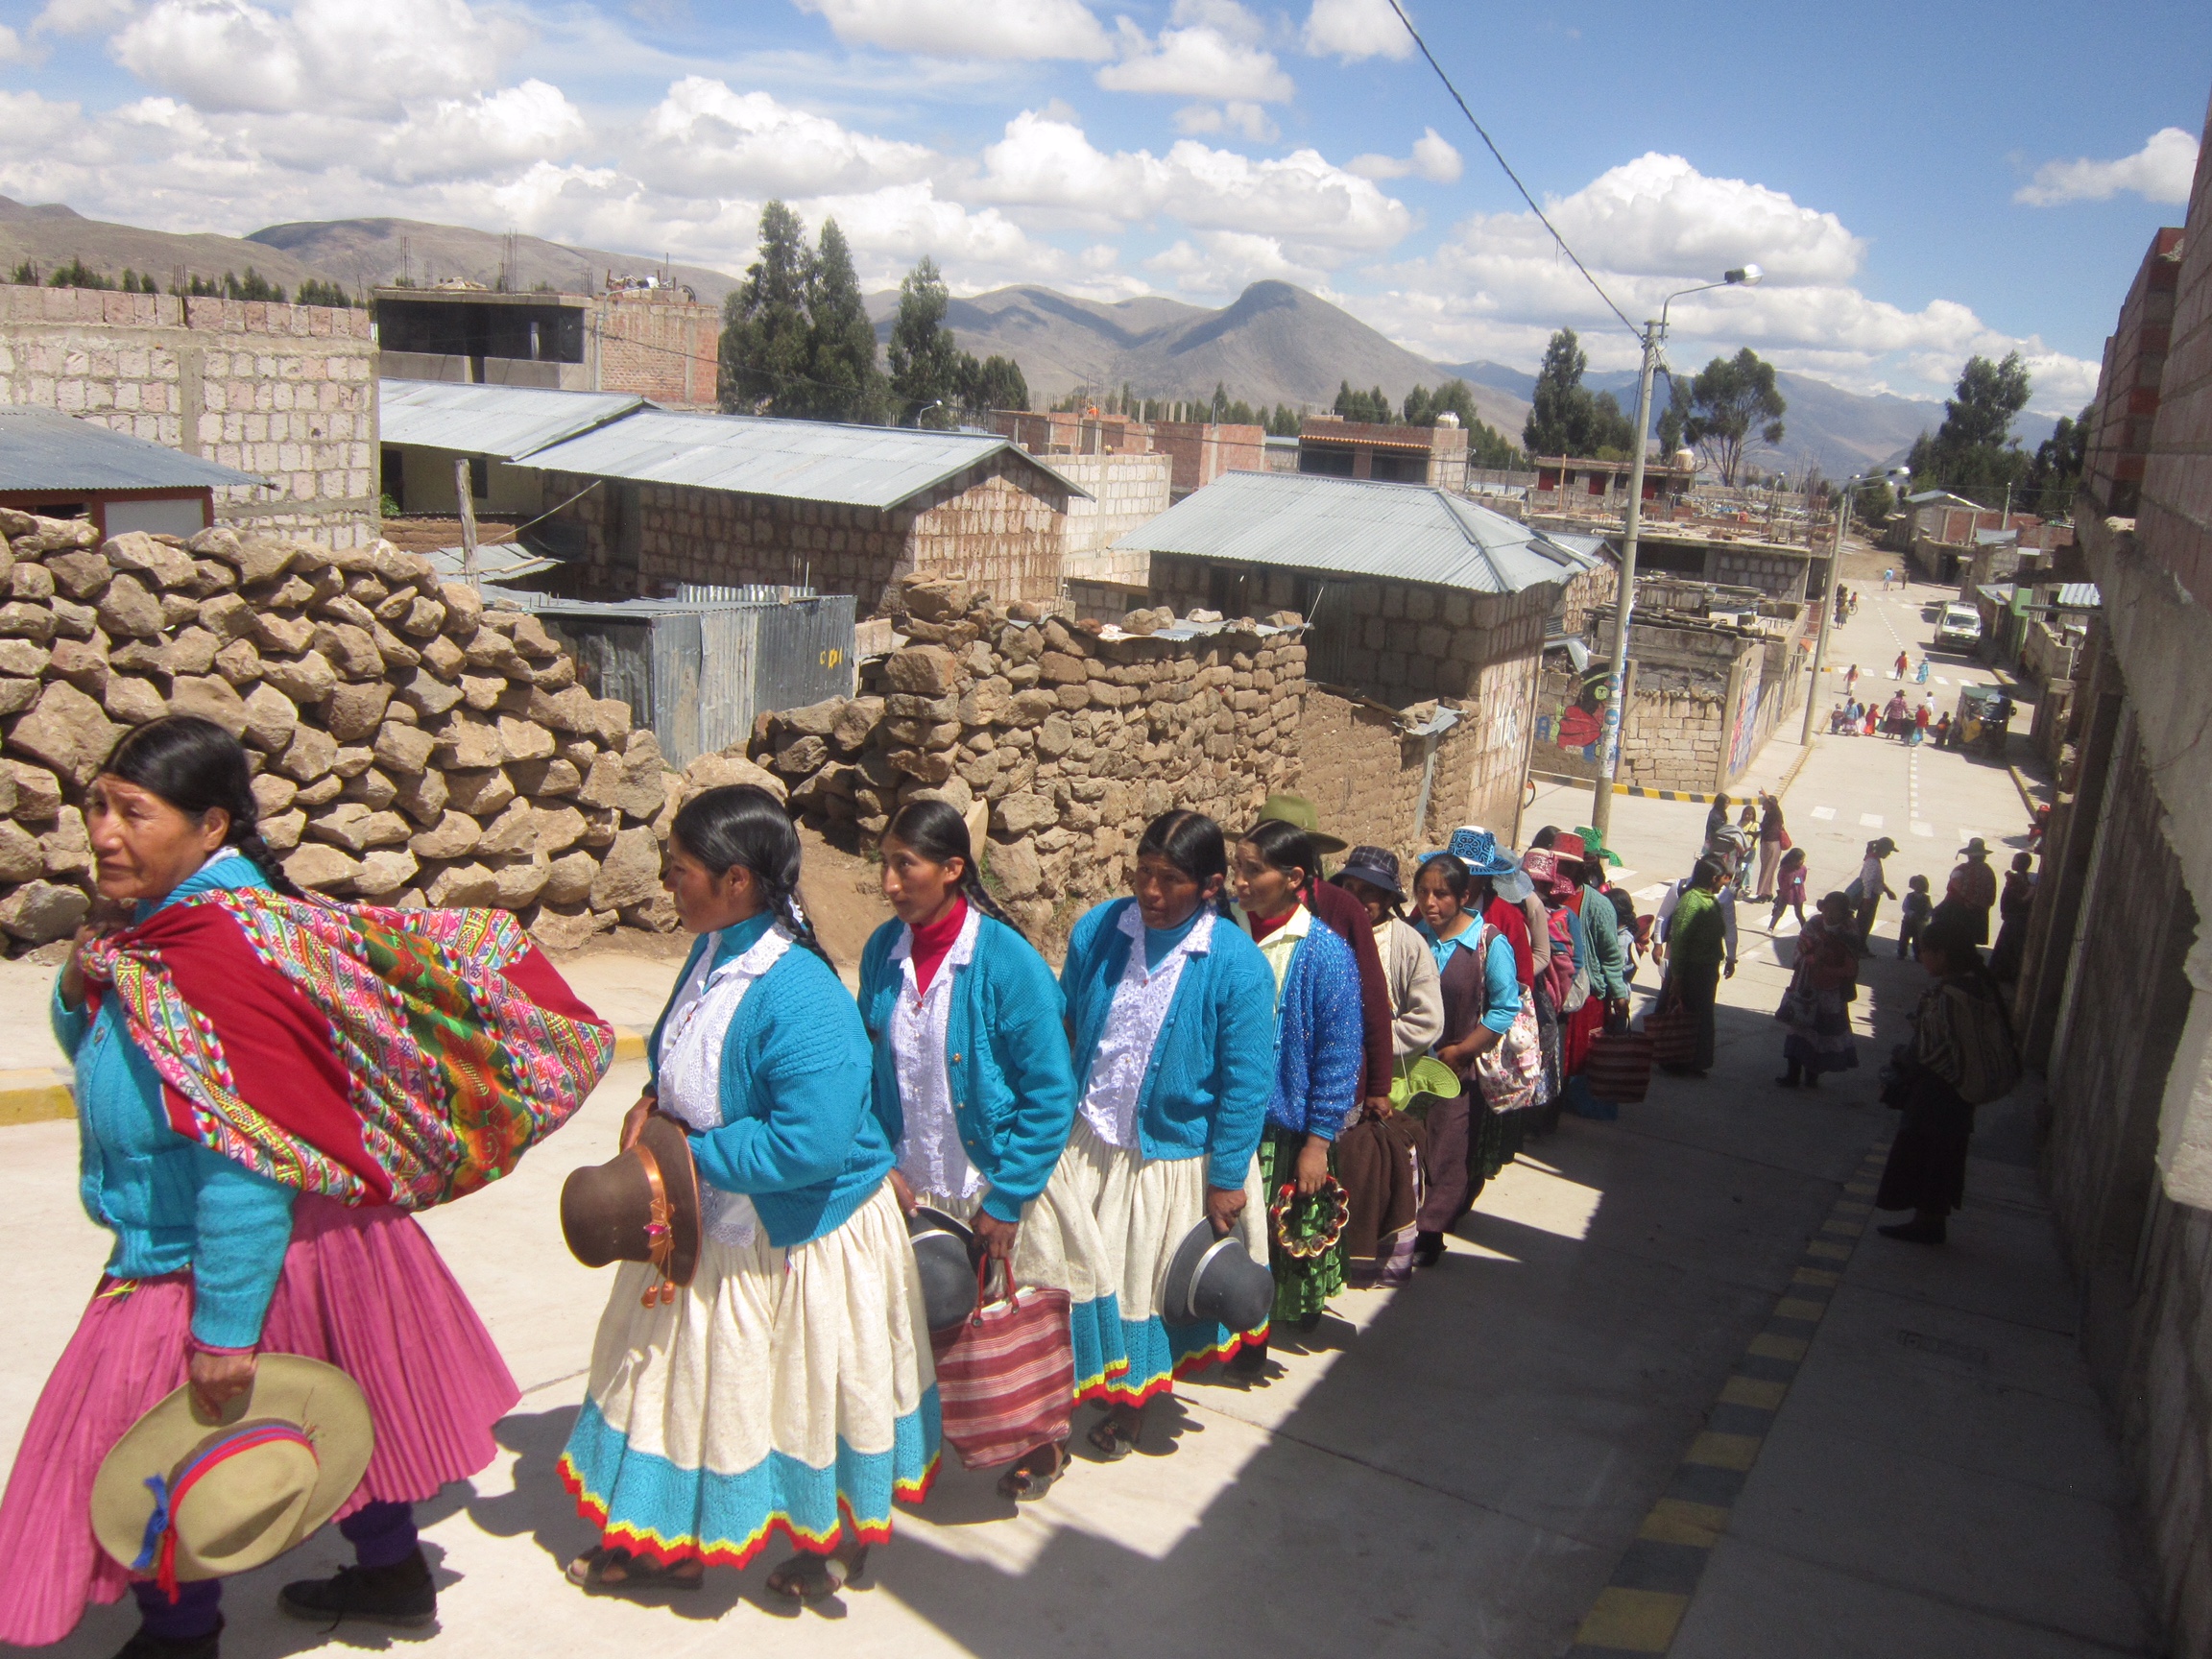 Peru – December 2014